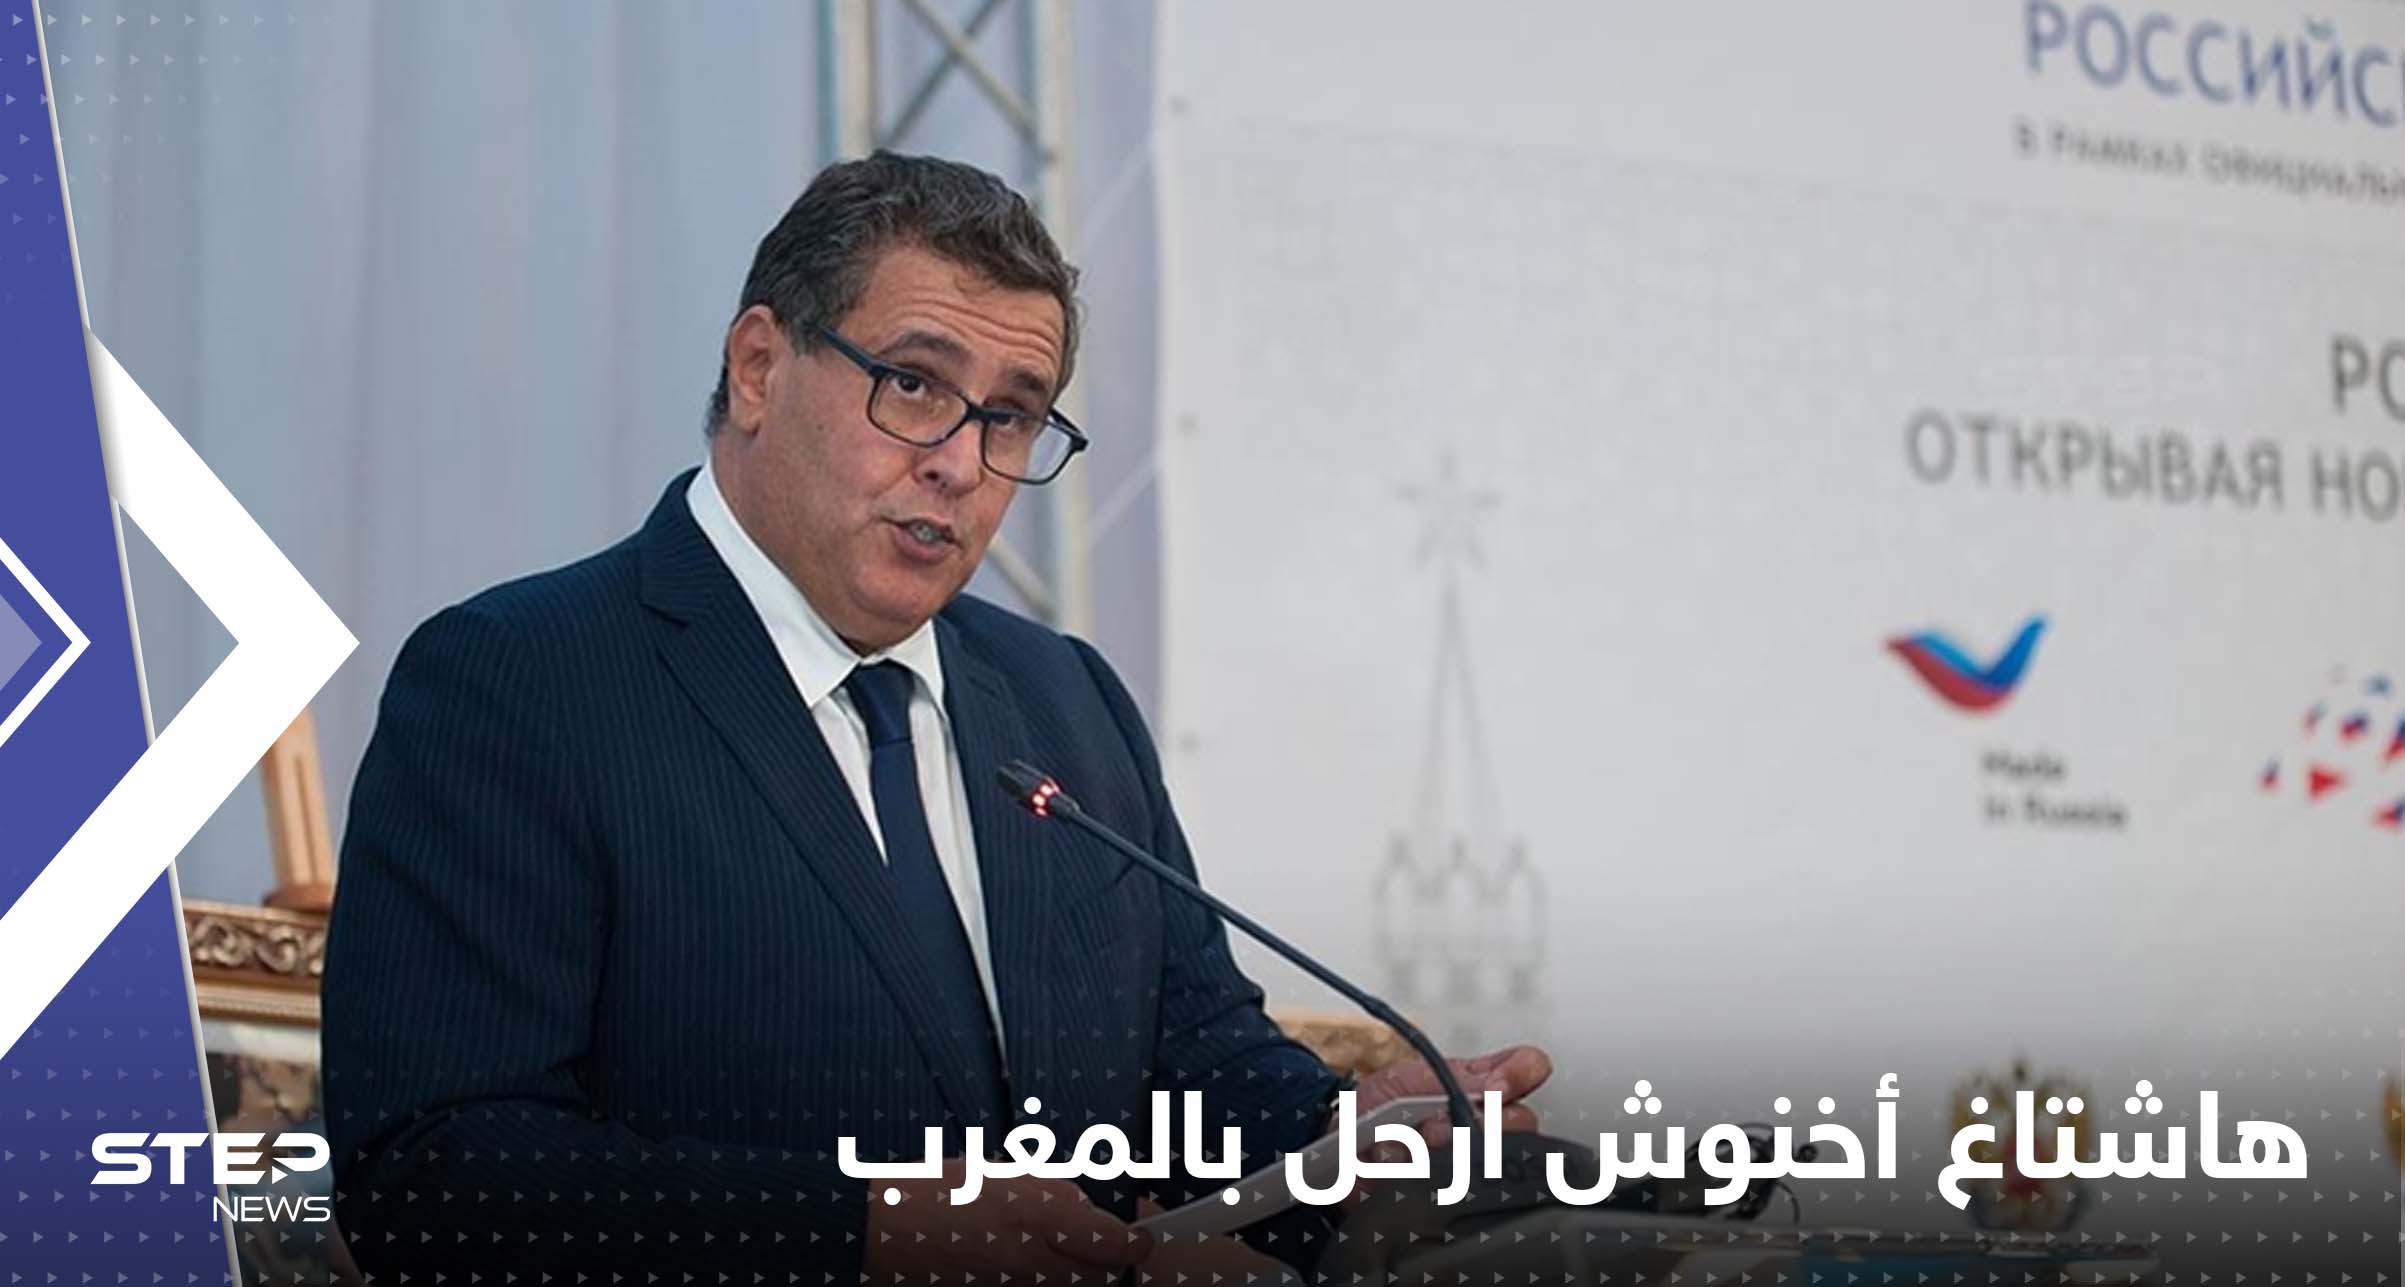 بالفيديو|| طرد رئيس الحكومة المغربية في مهرجان فني بأغادير.. "أخنوش ارحل"